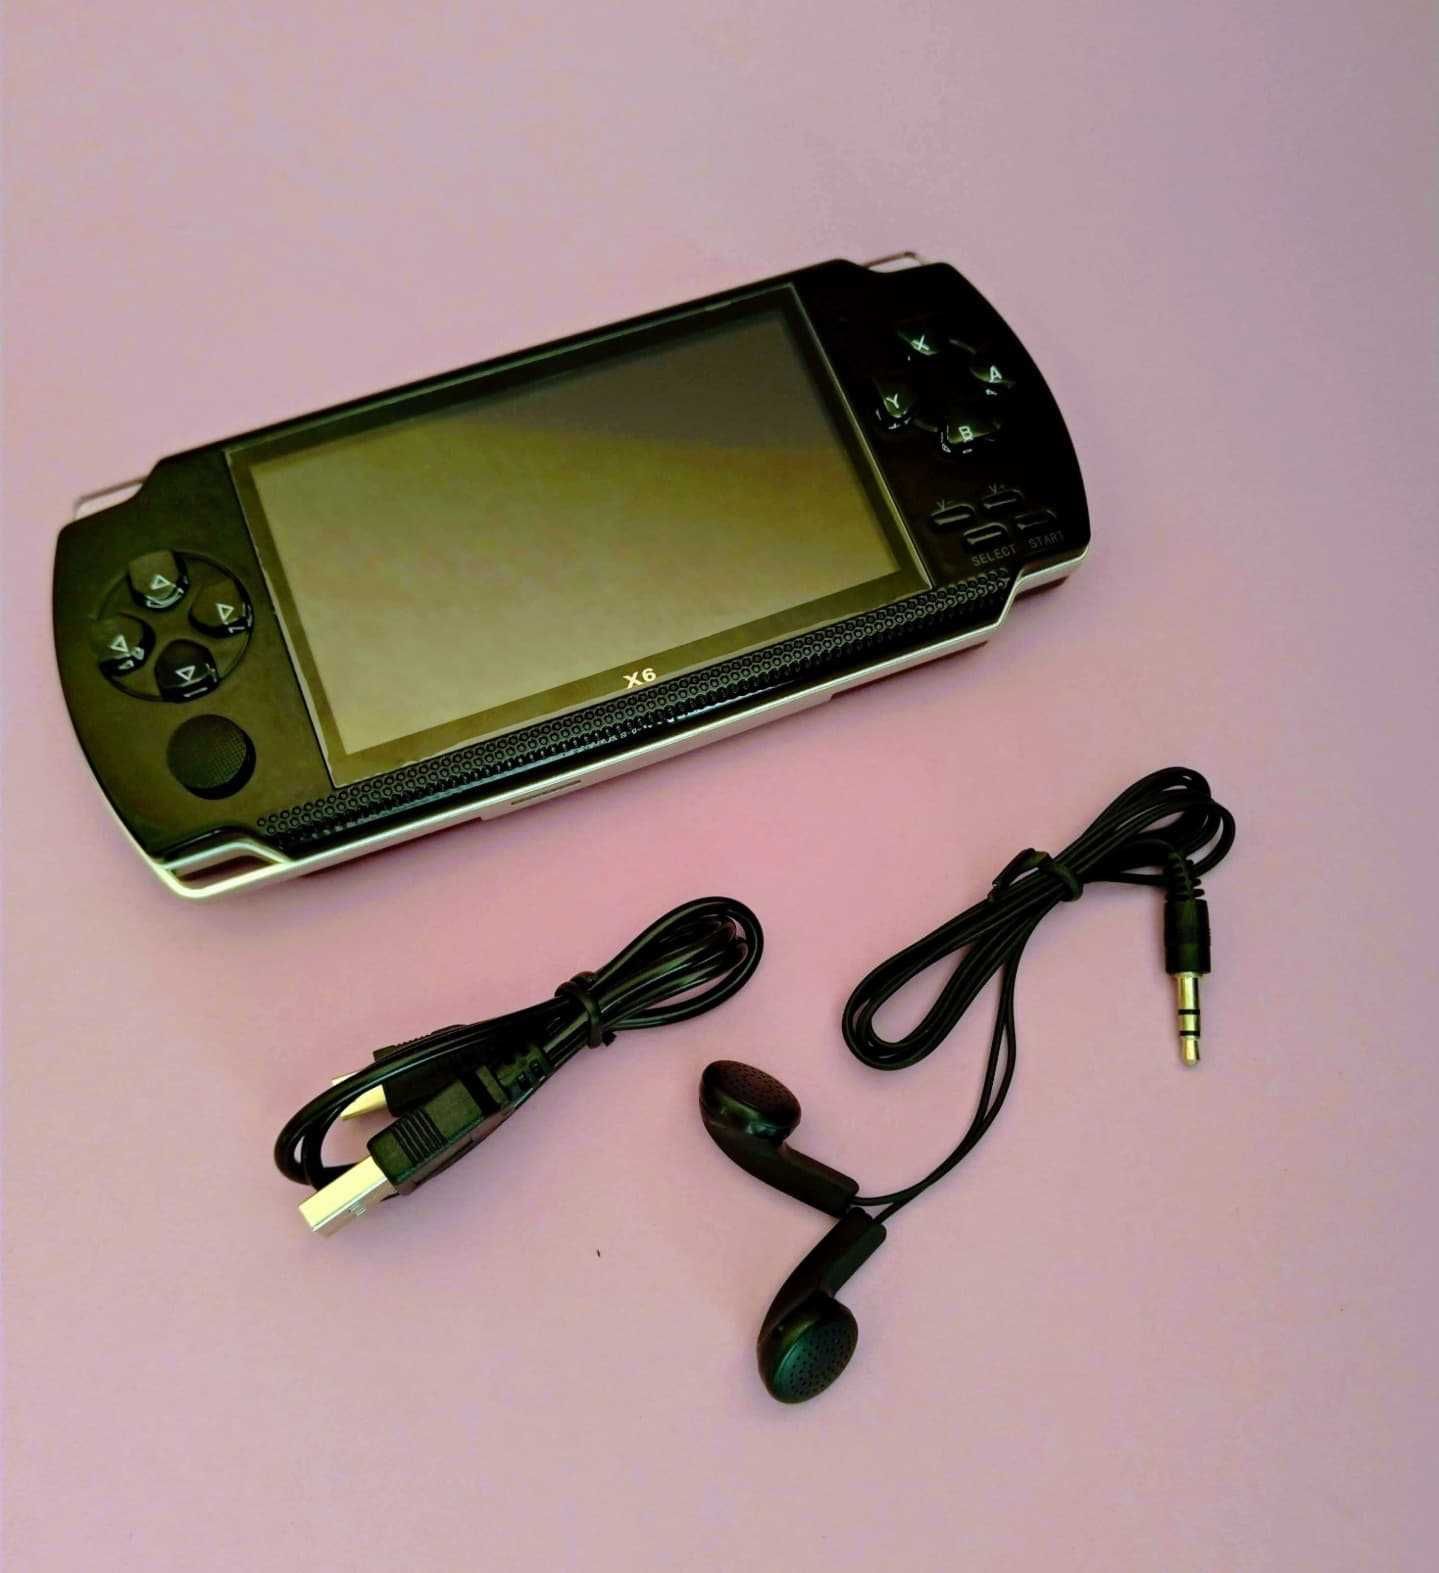 Портативная игровая консоль приставка PSP X6 ПСП 8Gb 4. 3 тысячи игр